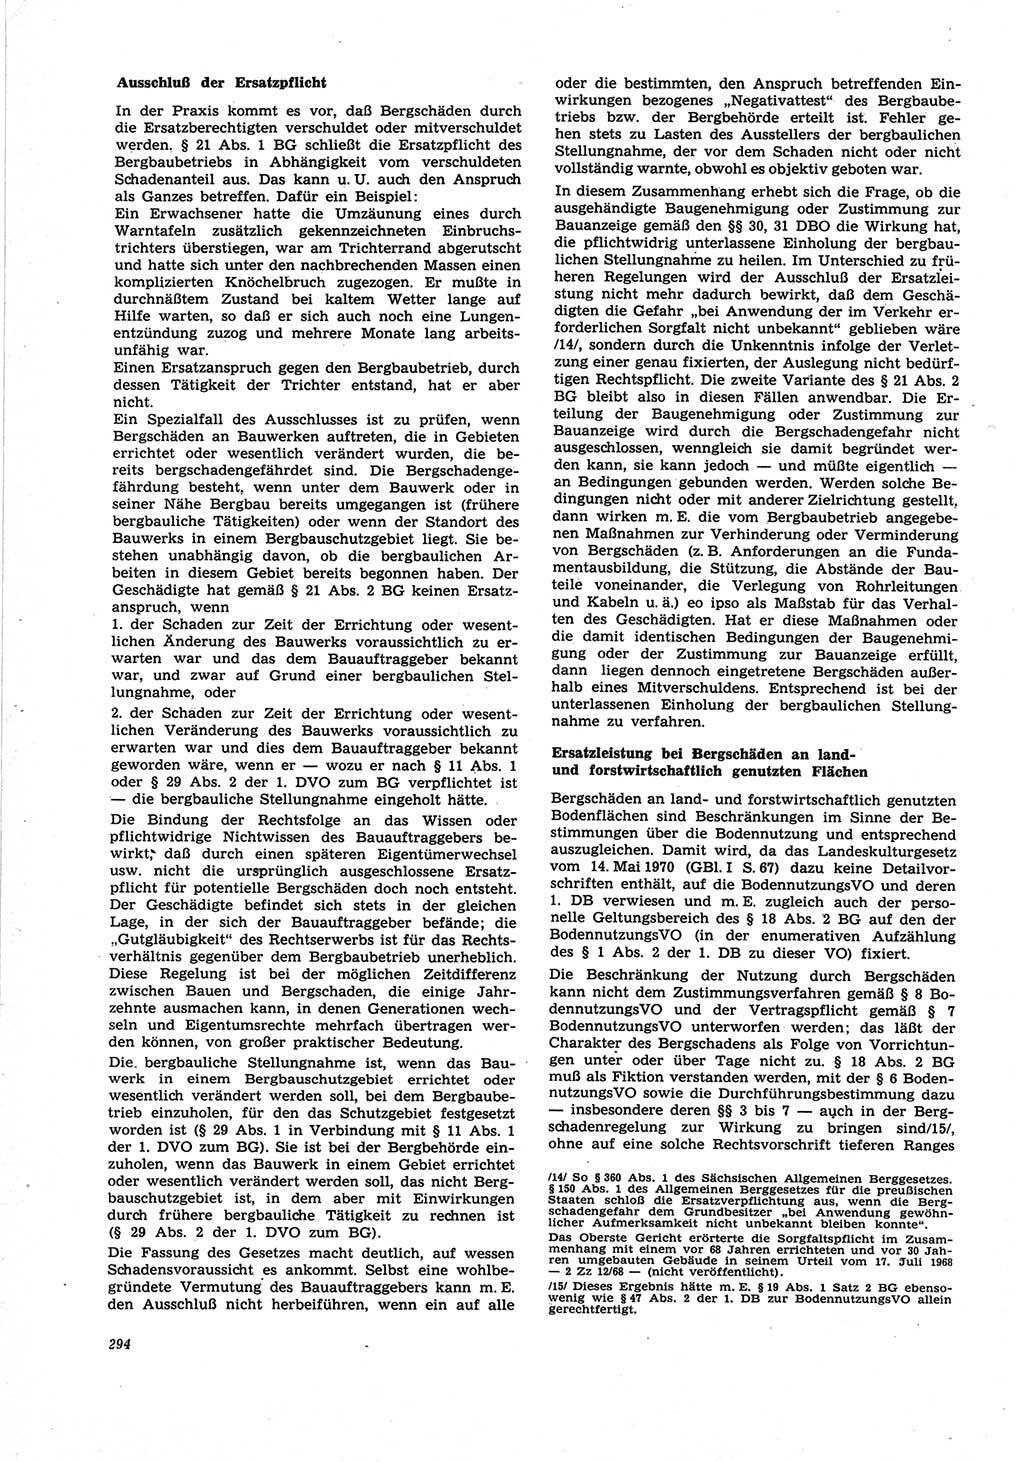 Neue Justiz (NJ), Zeitschrift für Recht und Rechtswissenschaft [Deutsche Demokratische Republik (DDR)], 25. Jahrgang 1971, Seite 294 (NJ DDR 1971, S. 294)